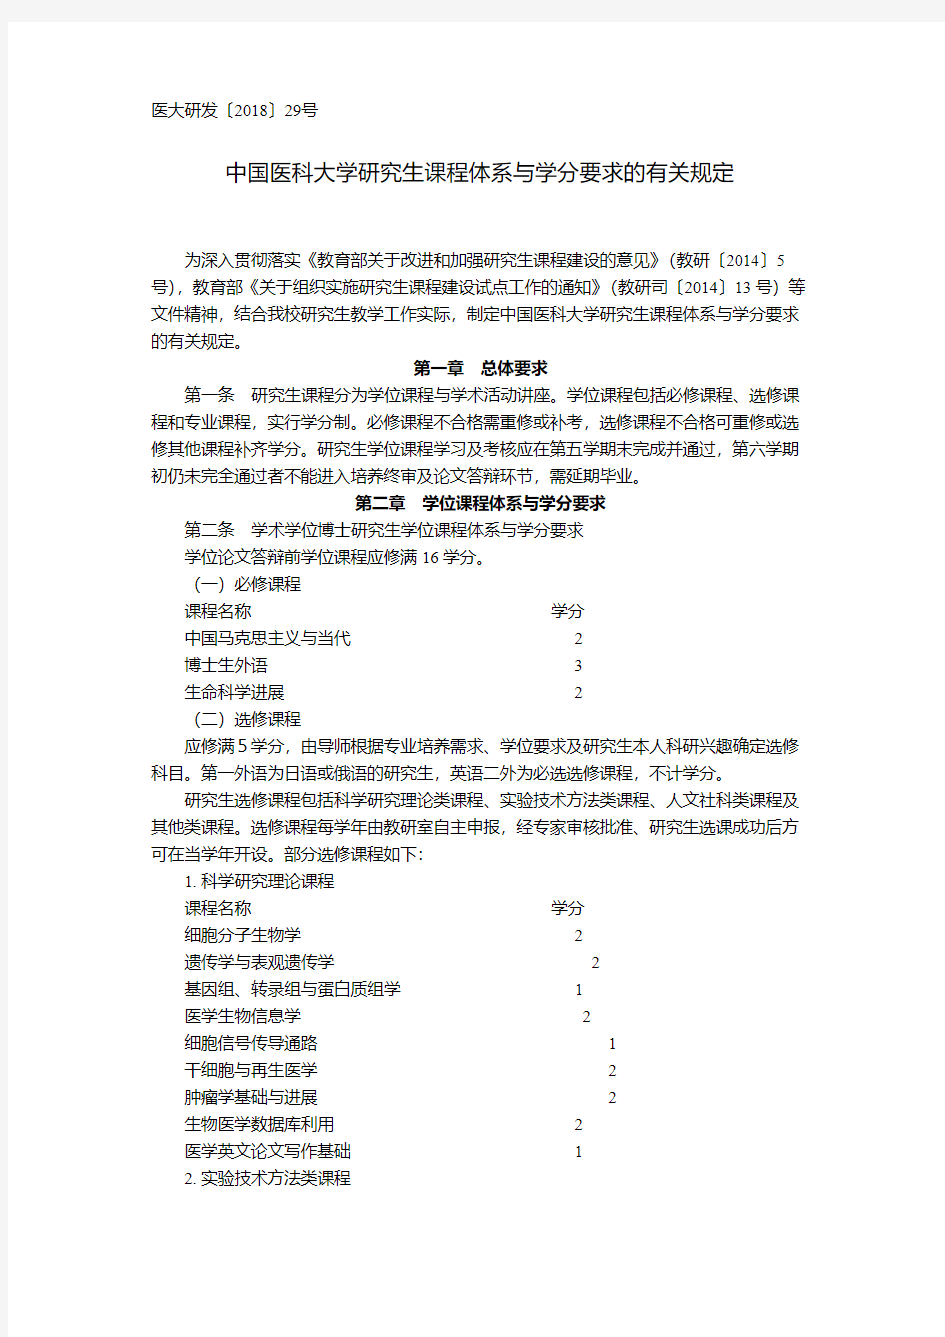 中国医科大学研究生课程体系与学分要求的有关规定